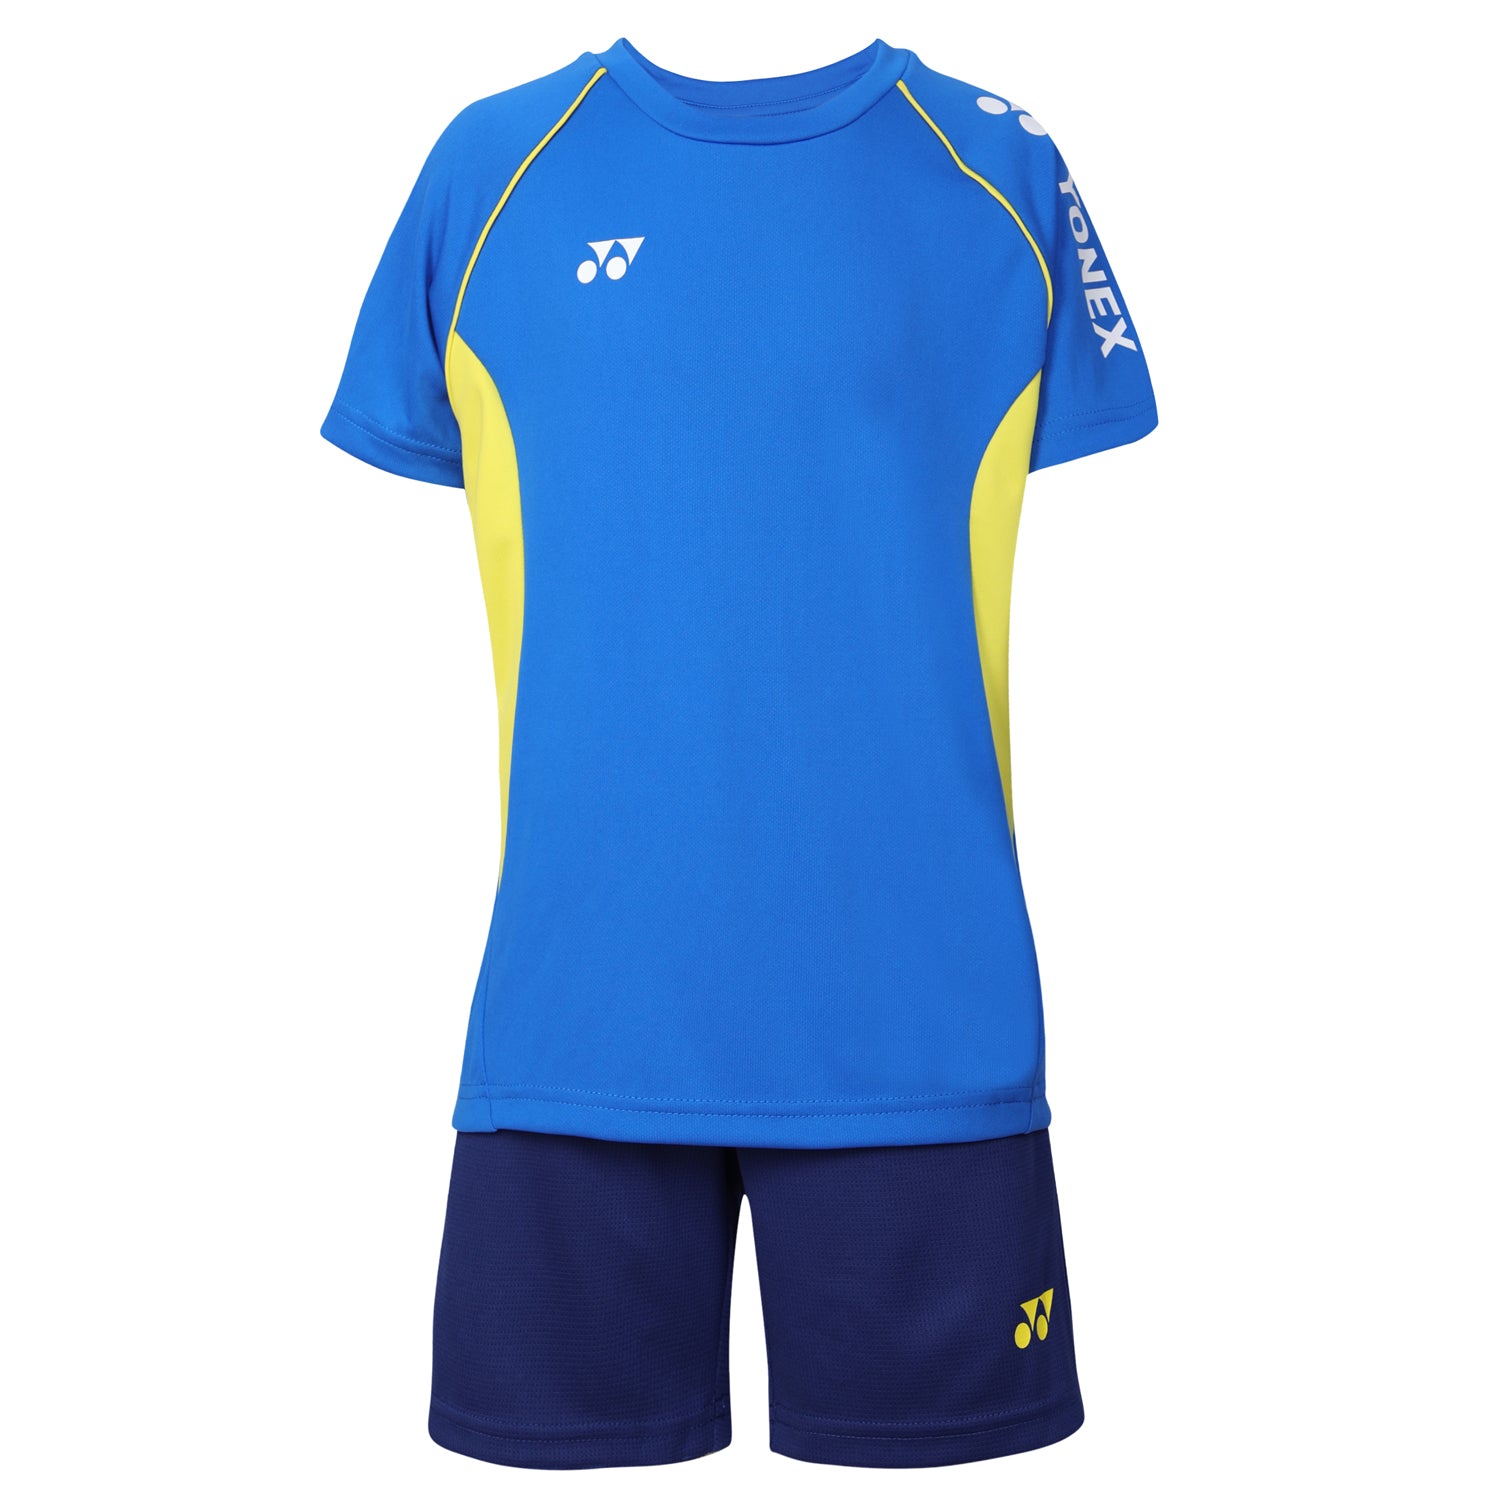 Yonex 1594 Round Neck T-Shirt and Short set for Junior, Princess Blue